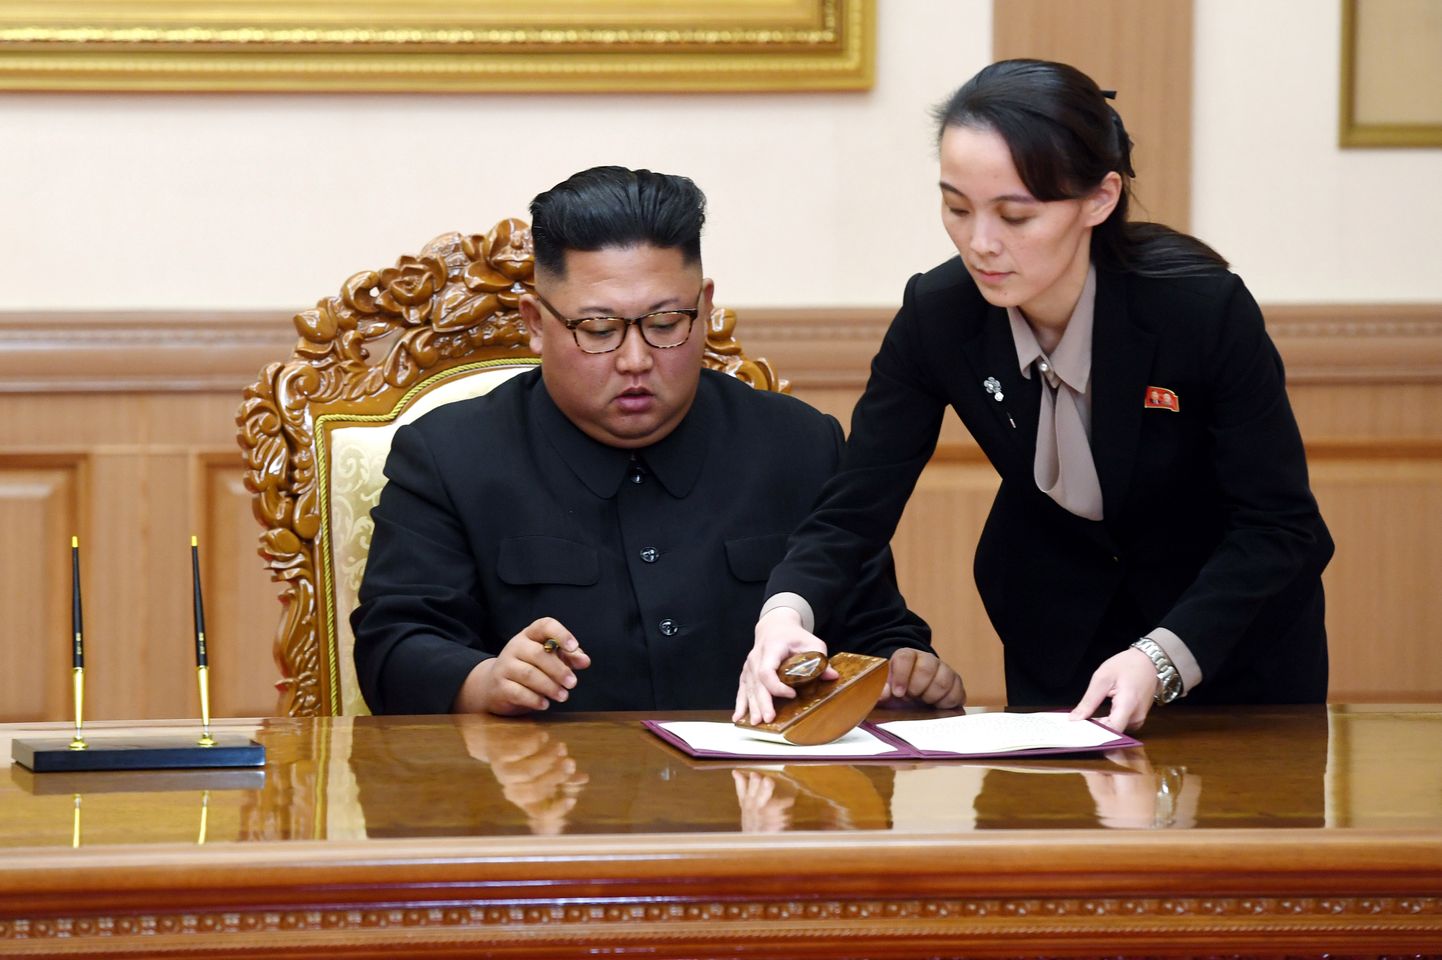 Põhja-Korea liider Kim Jong-un ja ta õde Kim Yo-jong 19. septembril 2018 Pyongyangis pärast Lõua-Korea presidendi Moon Jae-iniga kohtumist dokumente allkirjastamas